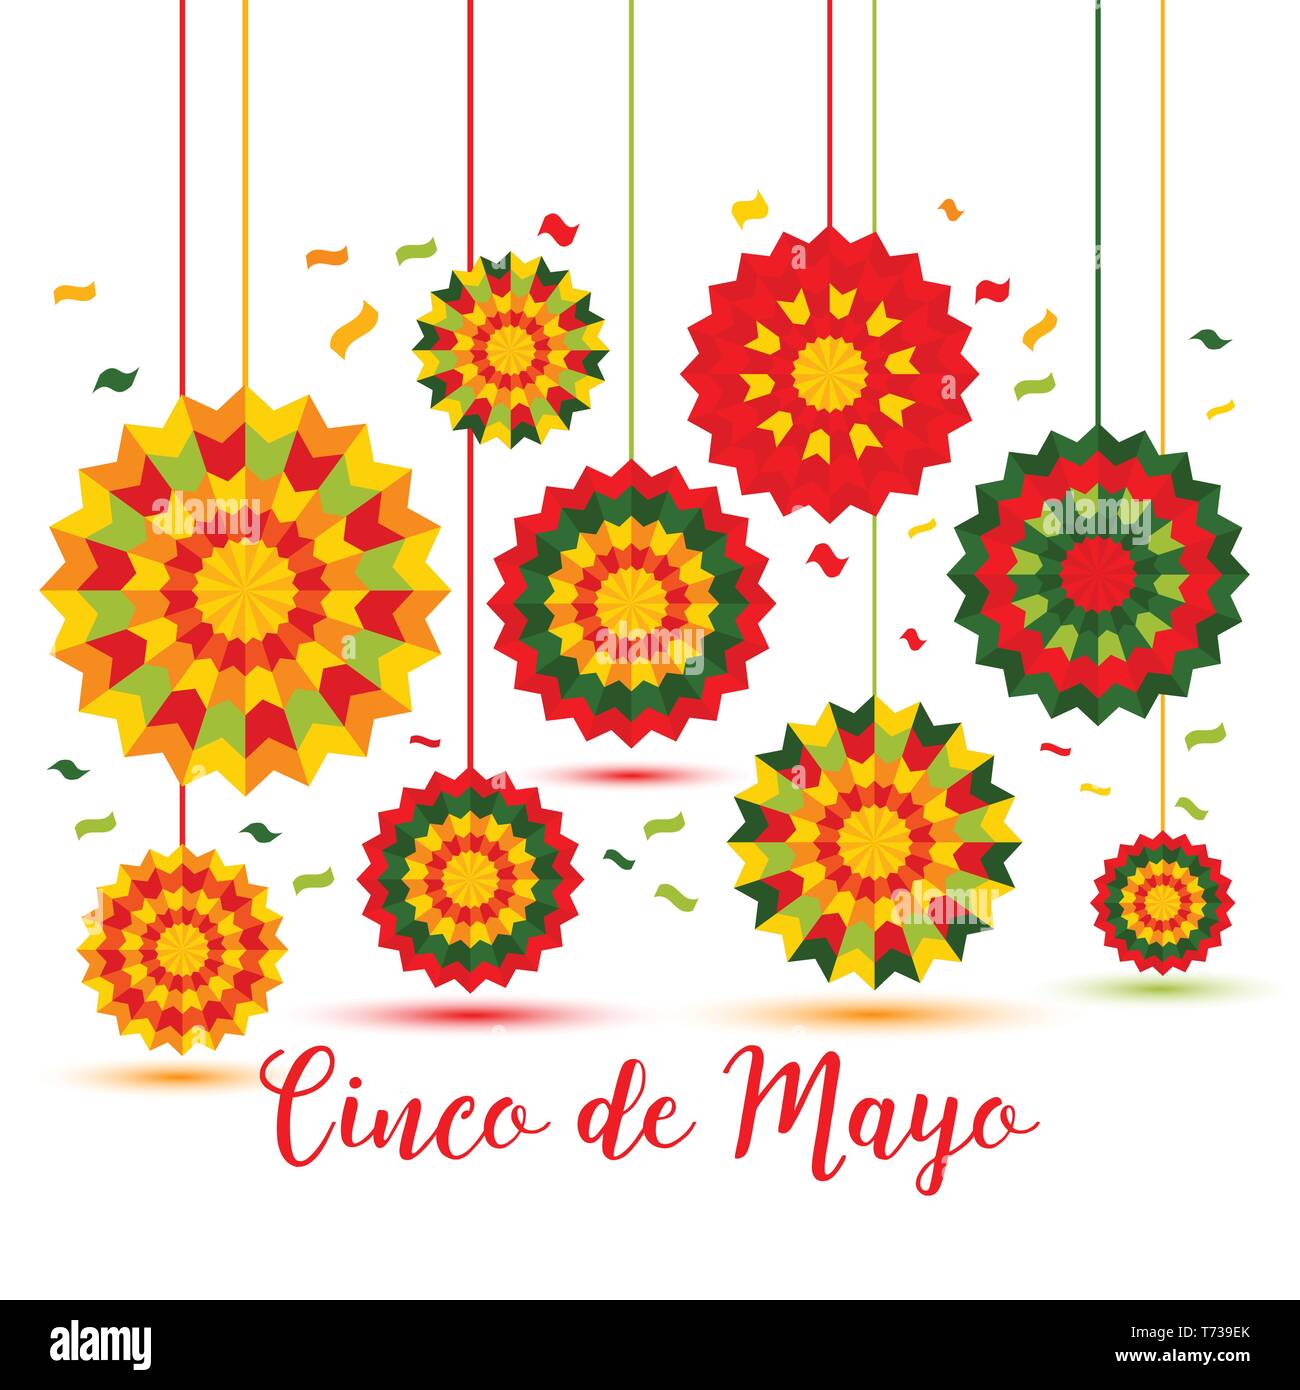 Cinco de Mayo - 5 Maggio, federale vacanza in Messico. Fiesta banner e poster design con decorazioni Illustrazione Vettoriale